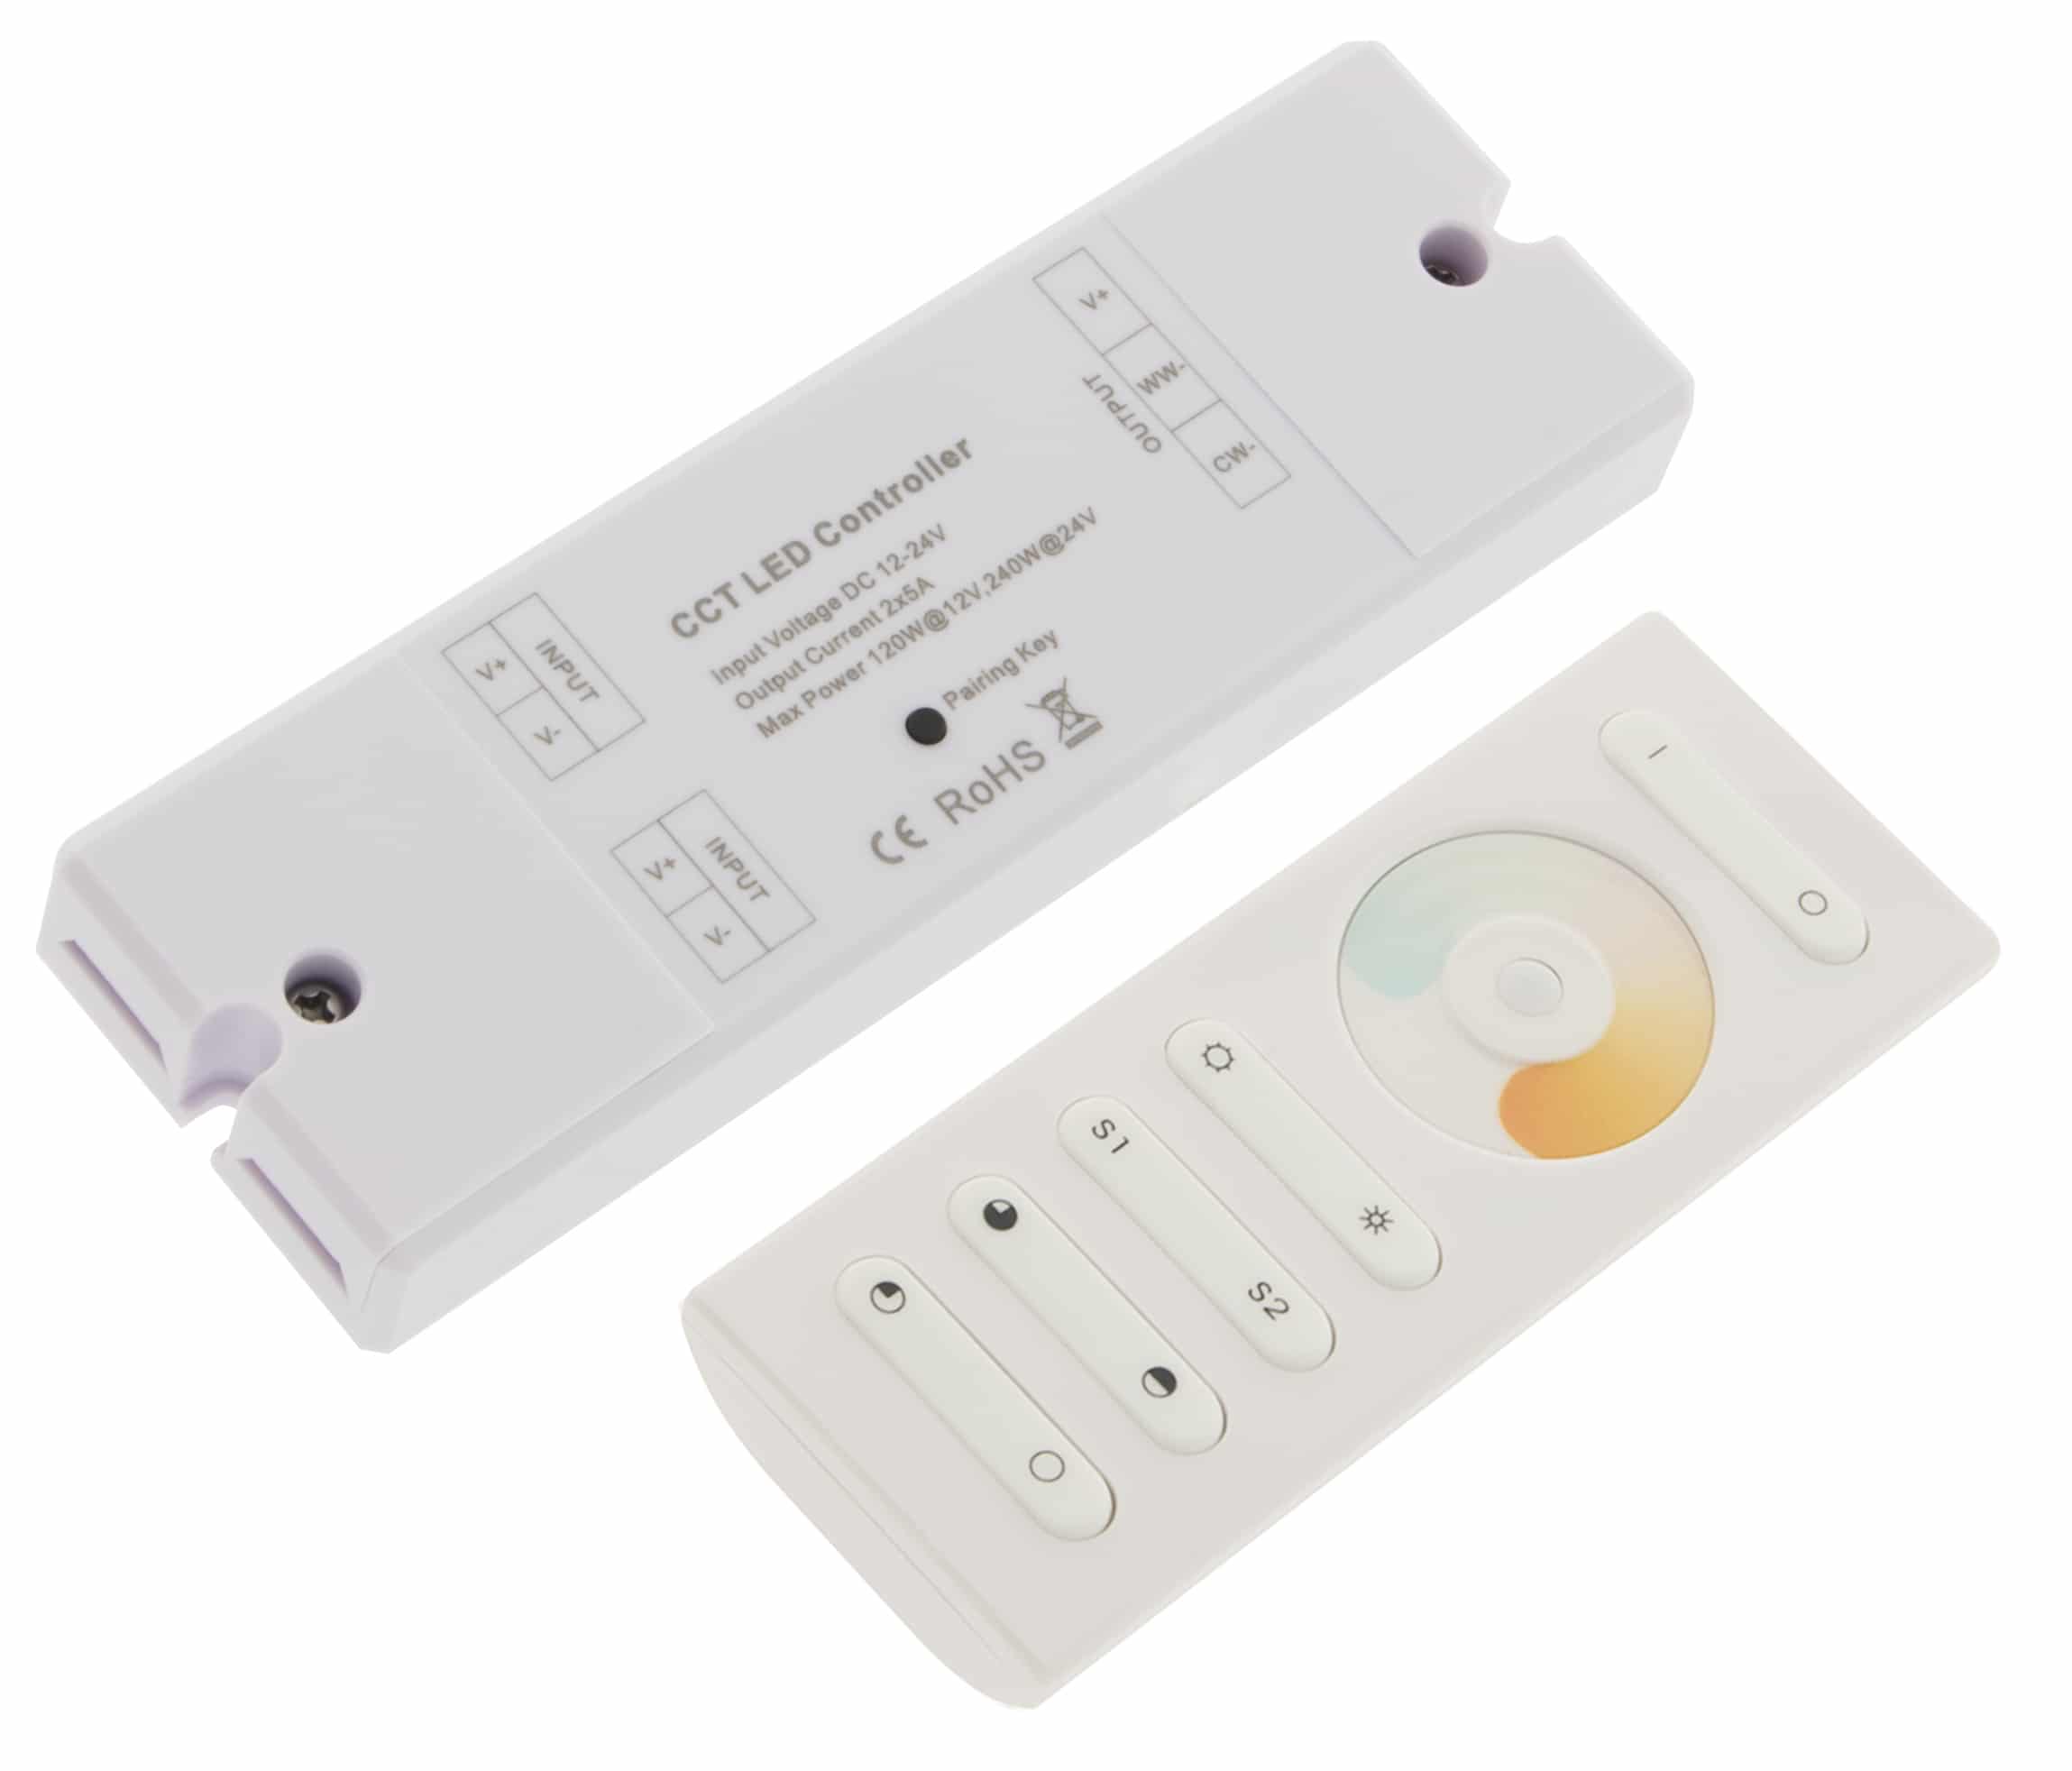 LED RF Controller DW (Dynamic White) Set